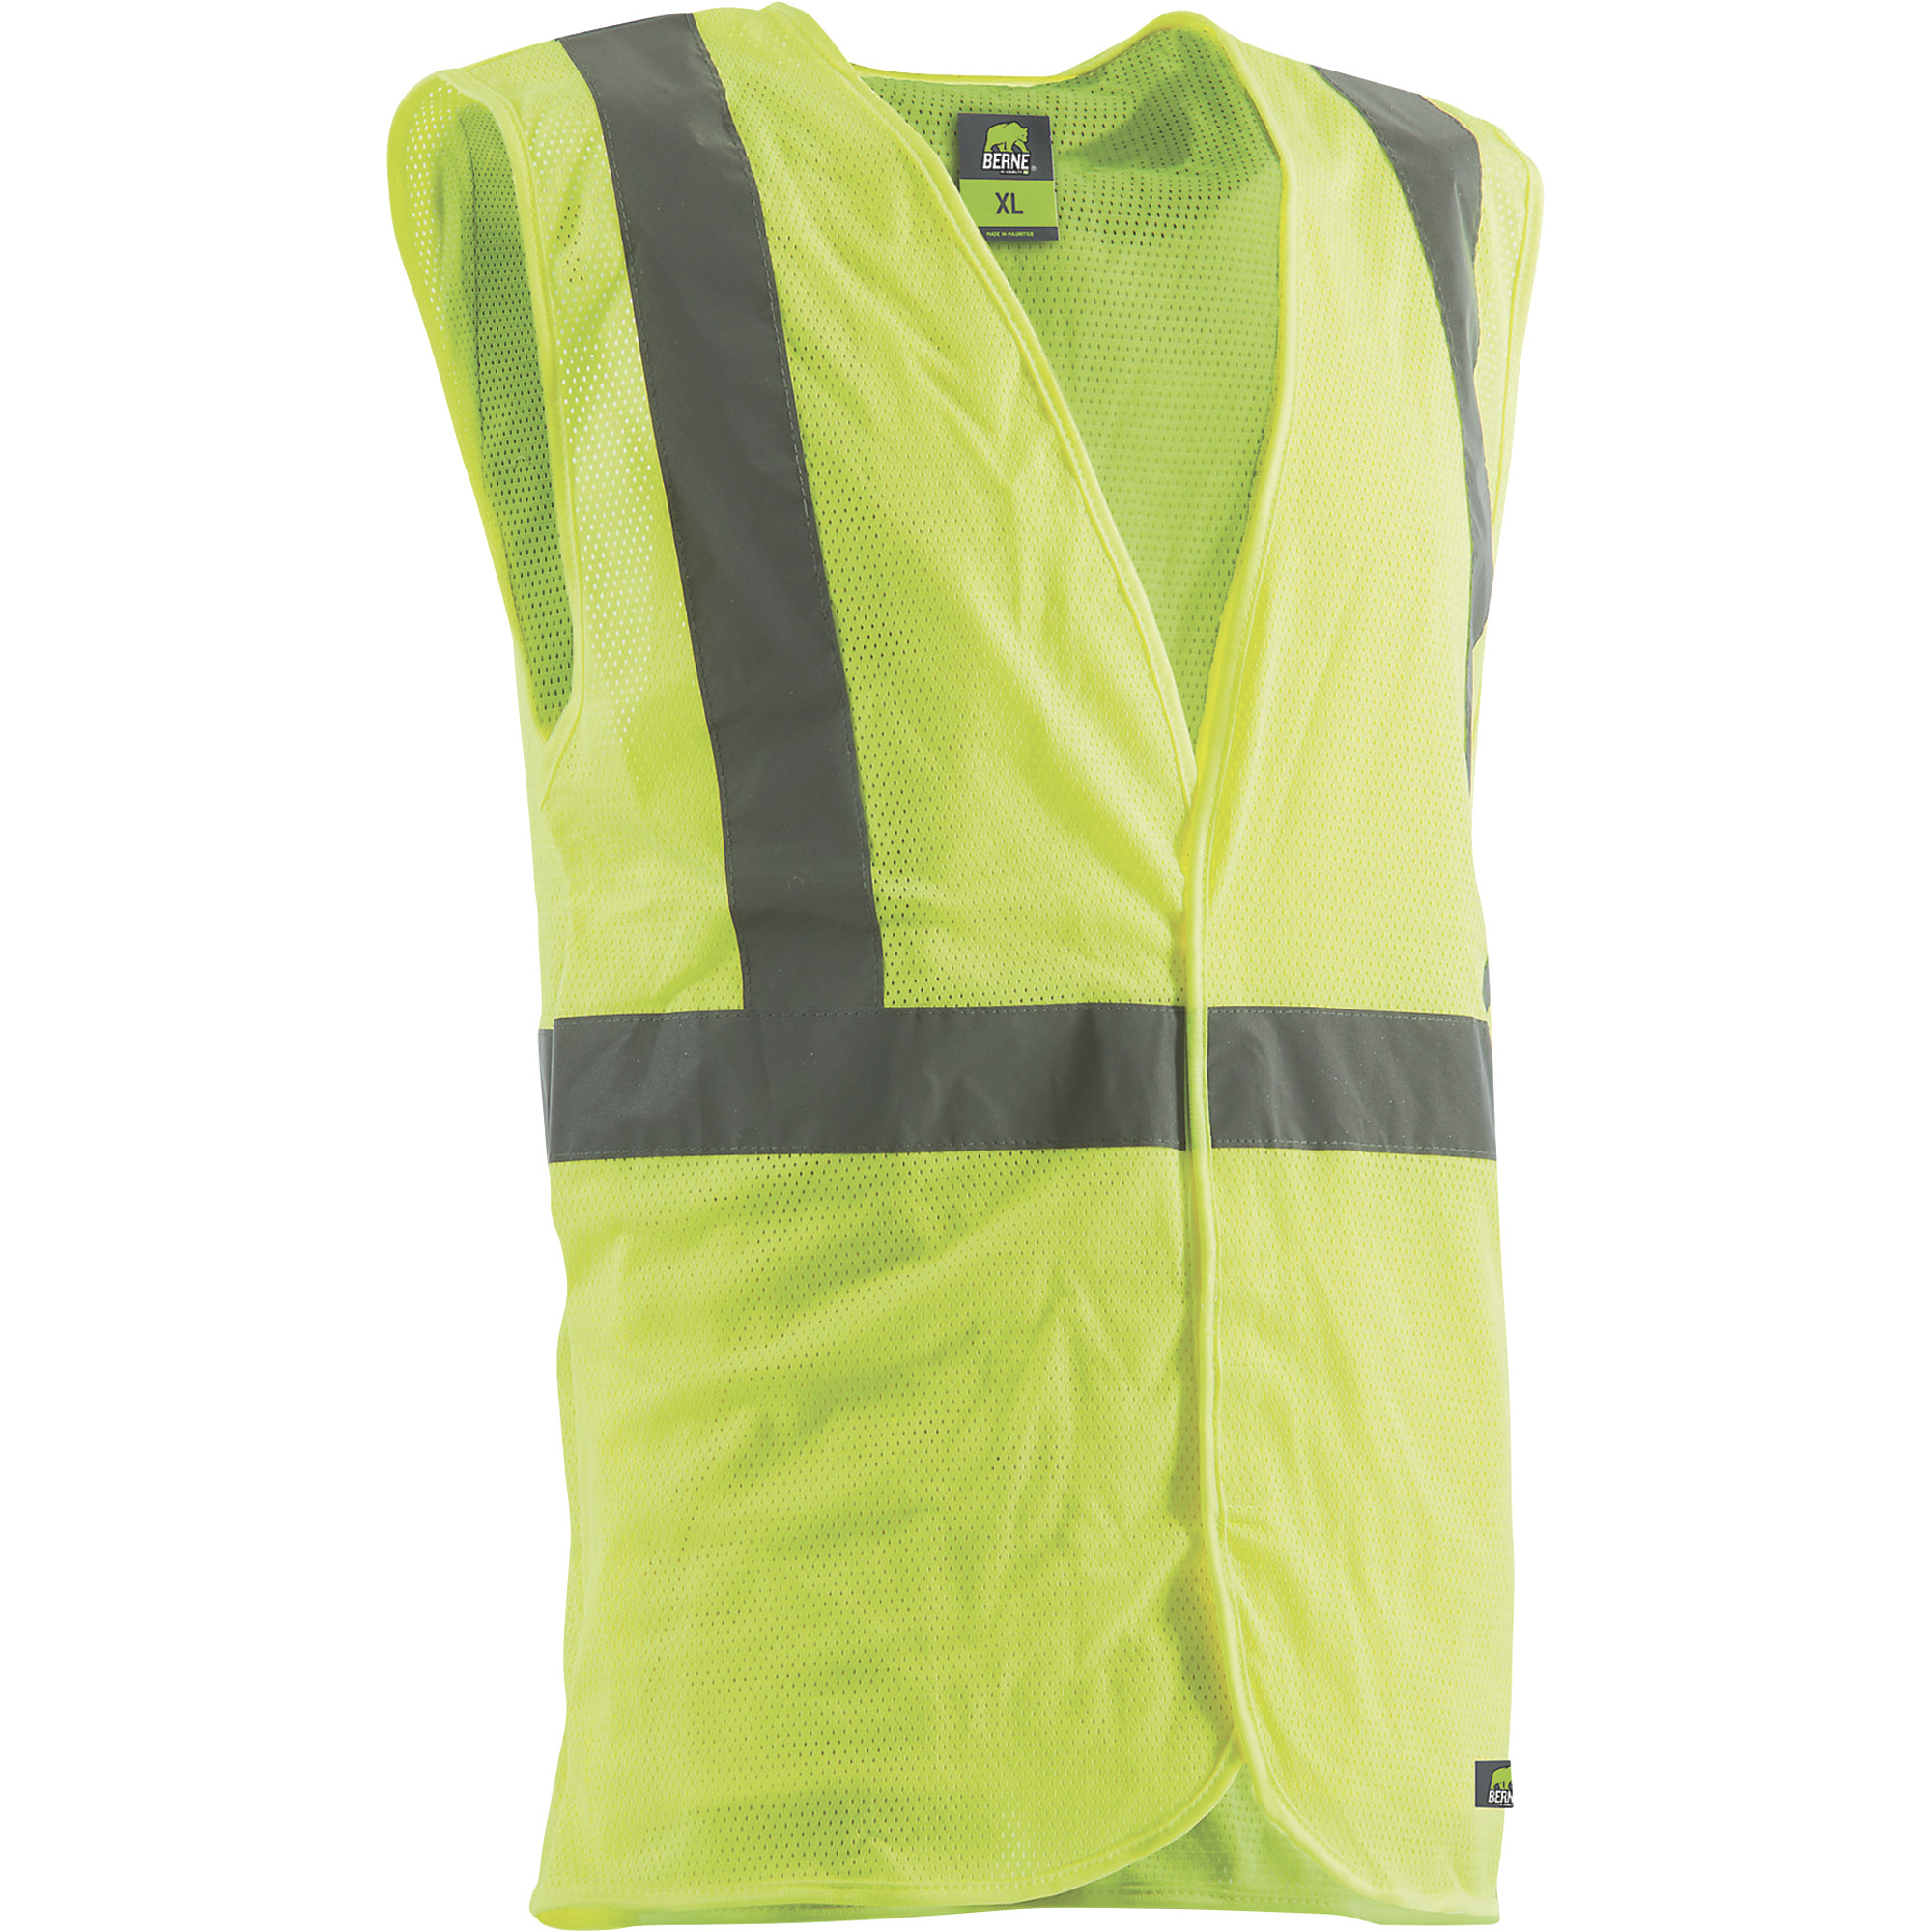 Berne Men's Class 2 High Visibility Economy Safety Vest â Lime, Medium/Large, Model HVV042BT